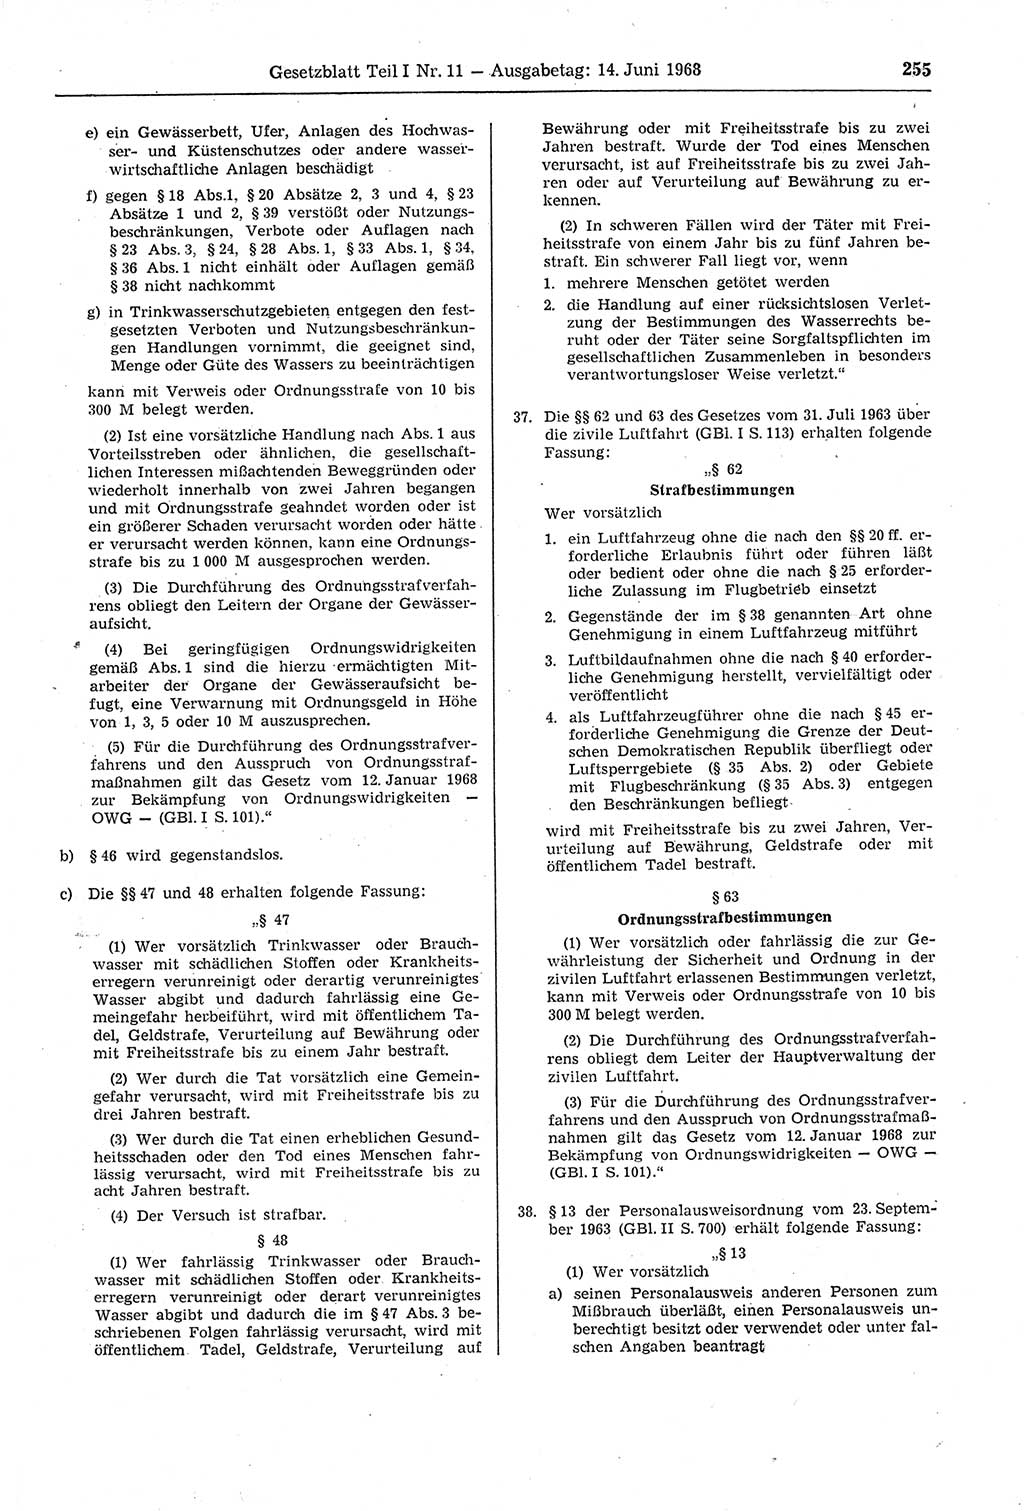 Gesetzblatt (GBl.) der Deutschen Demokratischen Republik (DDR) Teil Ⅰ 1968, Seite 255 (GBl. DDR Ⅰ 1968, S. 255)